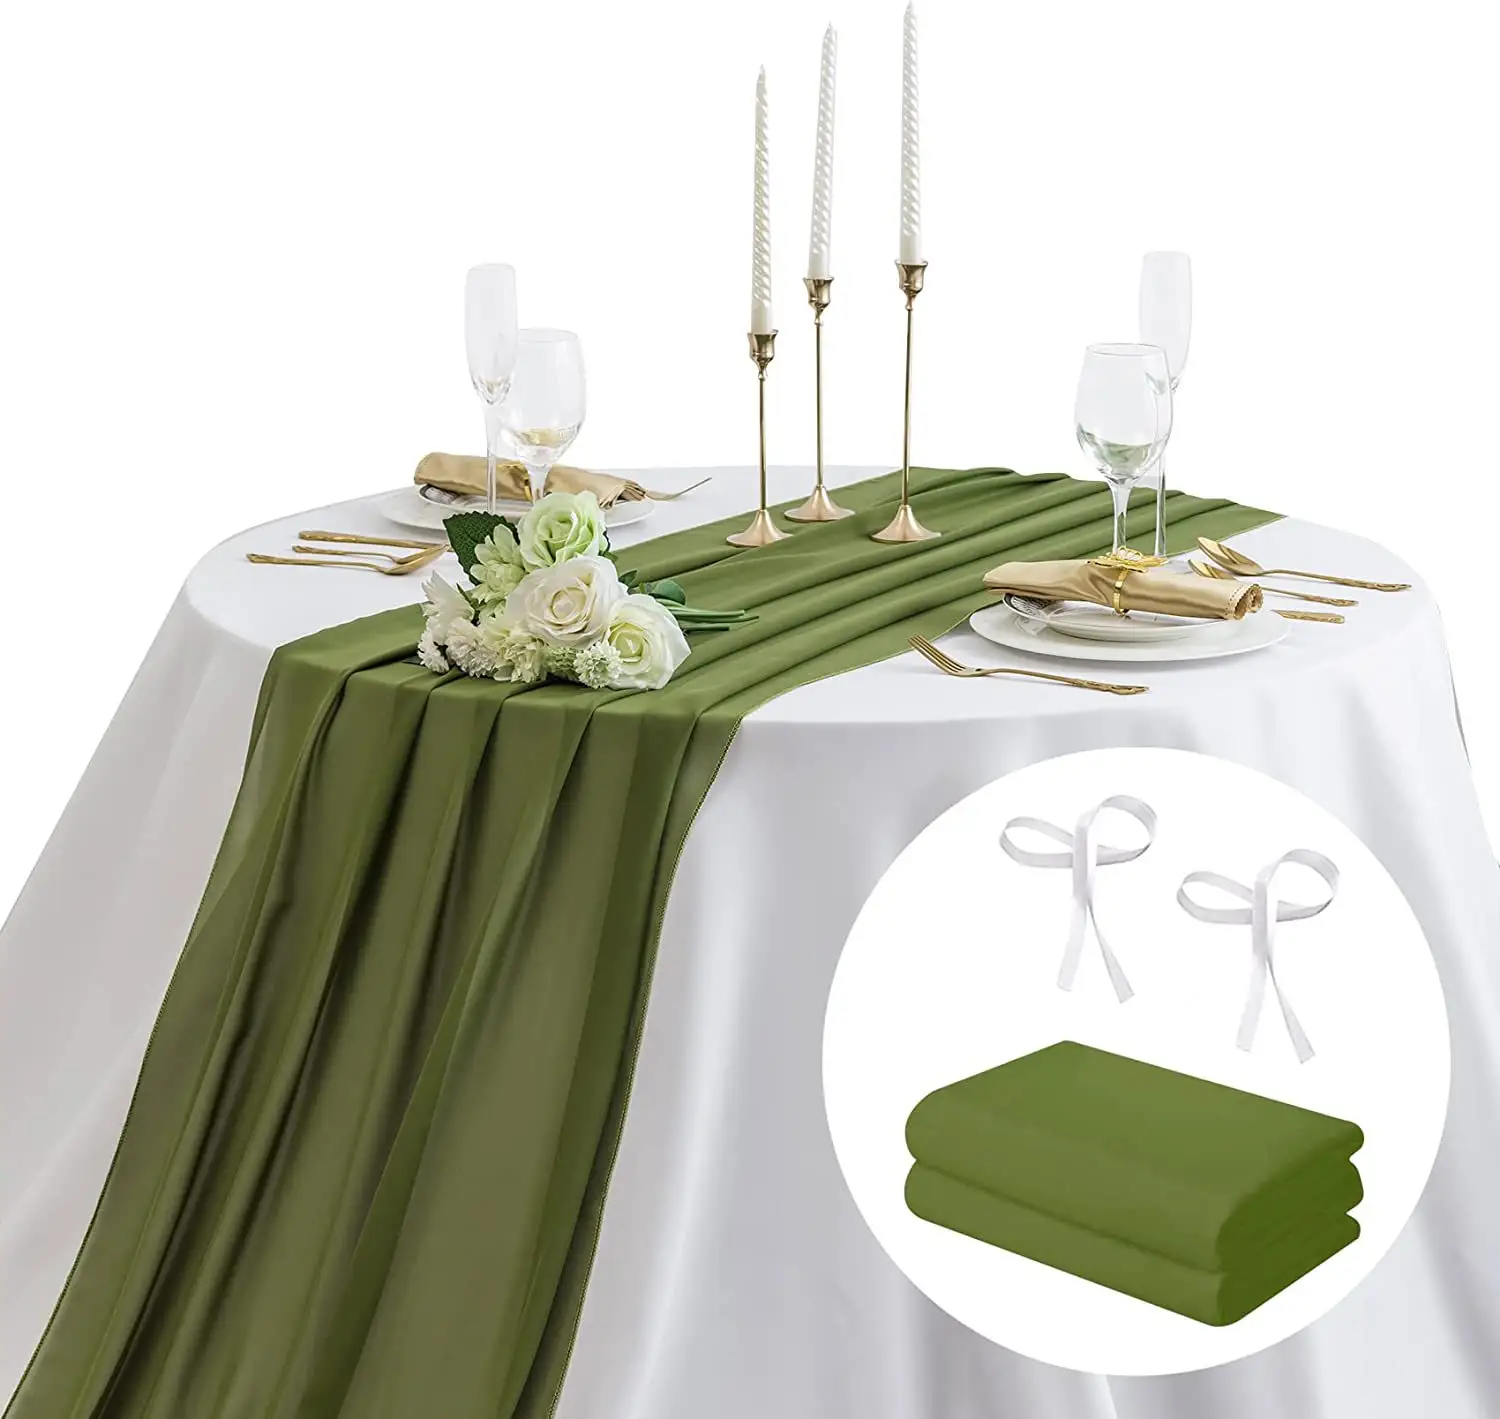 Chiffon Tischläufer Hochzeit Tischläufer Amazon chiffon Tischläufer neu weiß europäischer Stil Hochzeit